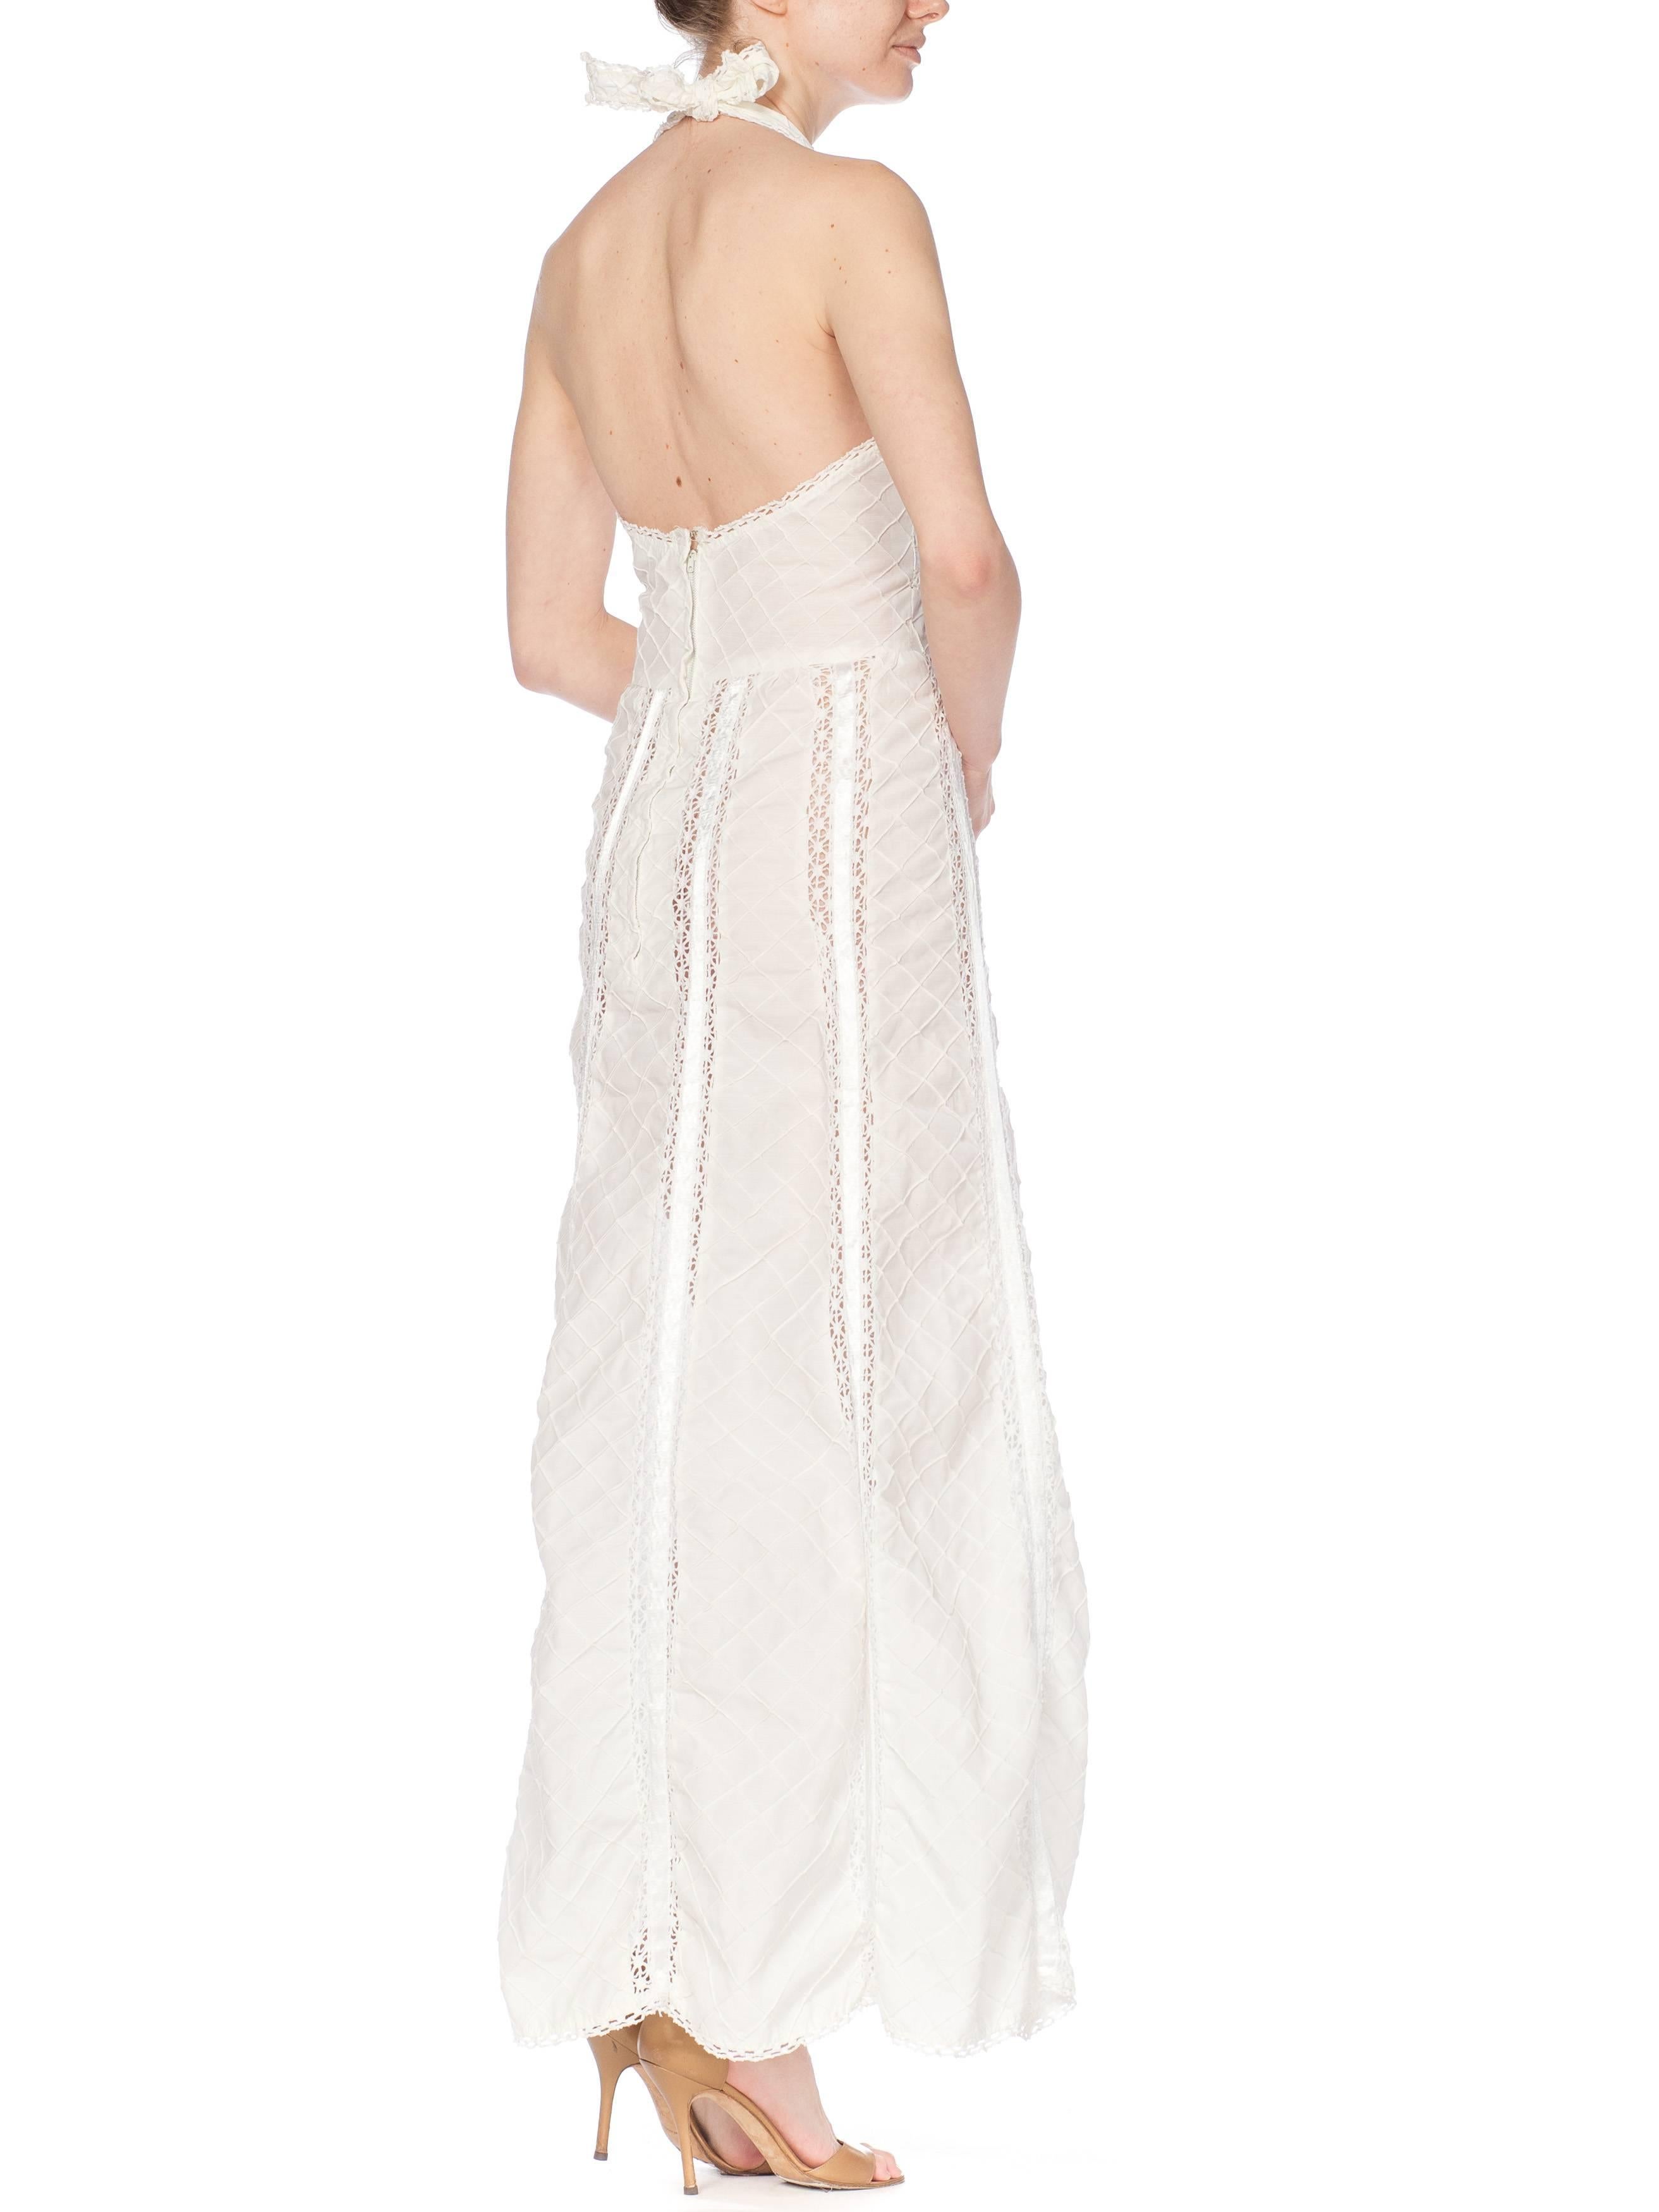 1970s White Cotton Lace Halter Dress 1